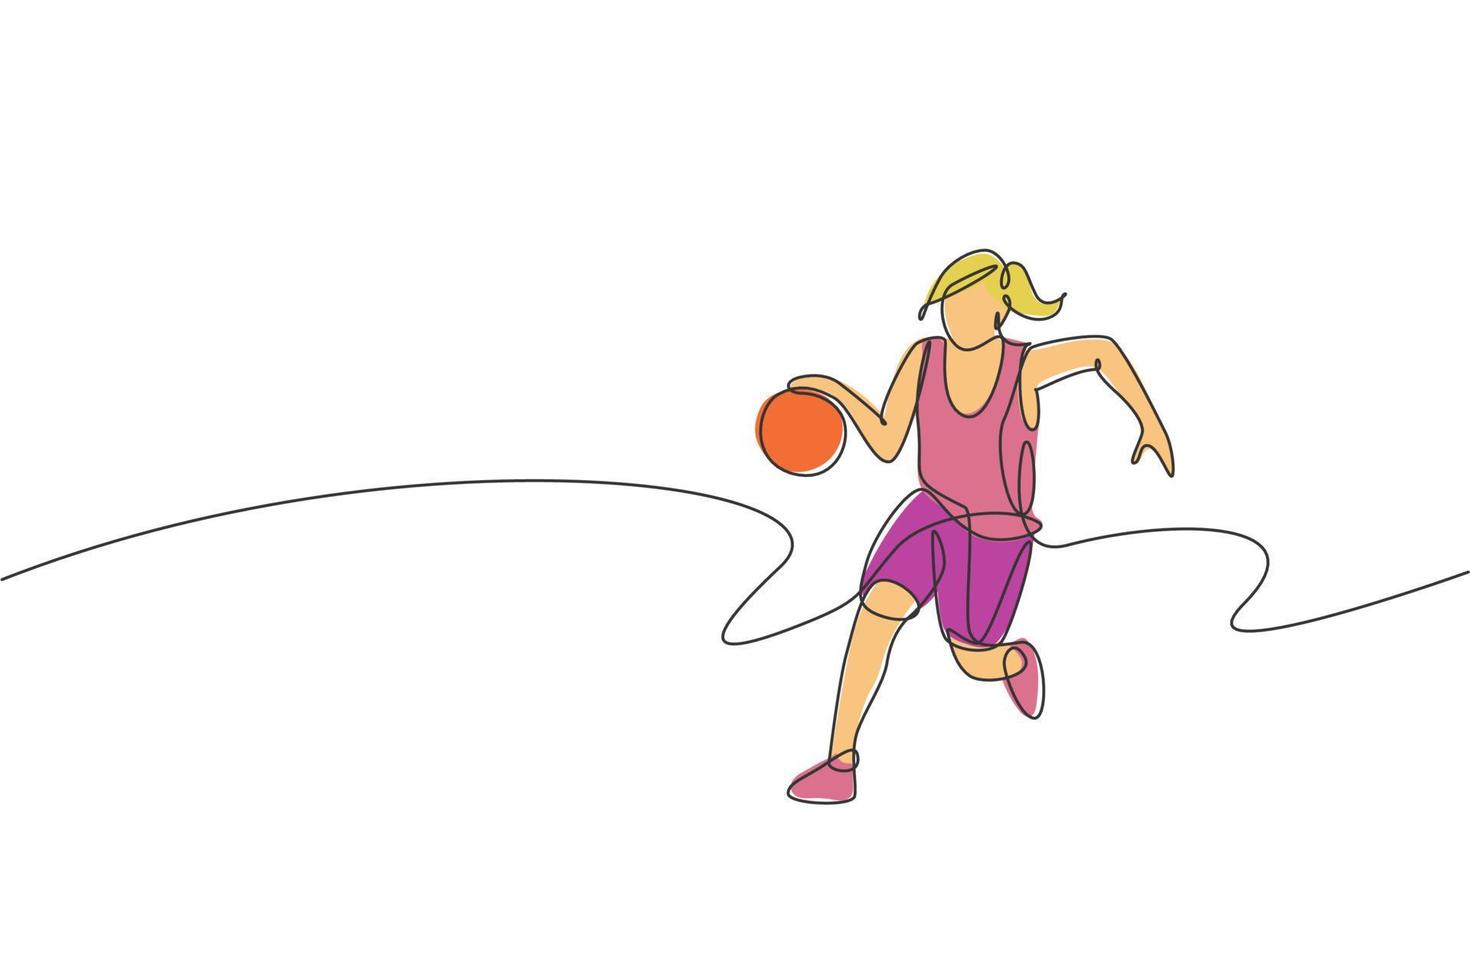 disegno a linea continua singola di una giovane giocatrice di basket in buona salute che dribbling. concetto di sport competitivo. illustrazione vettoriale alla moda di una linea di disegno per i media di promozione di tornei di basket